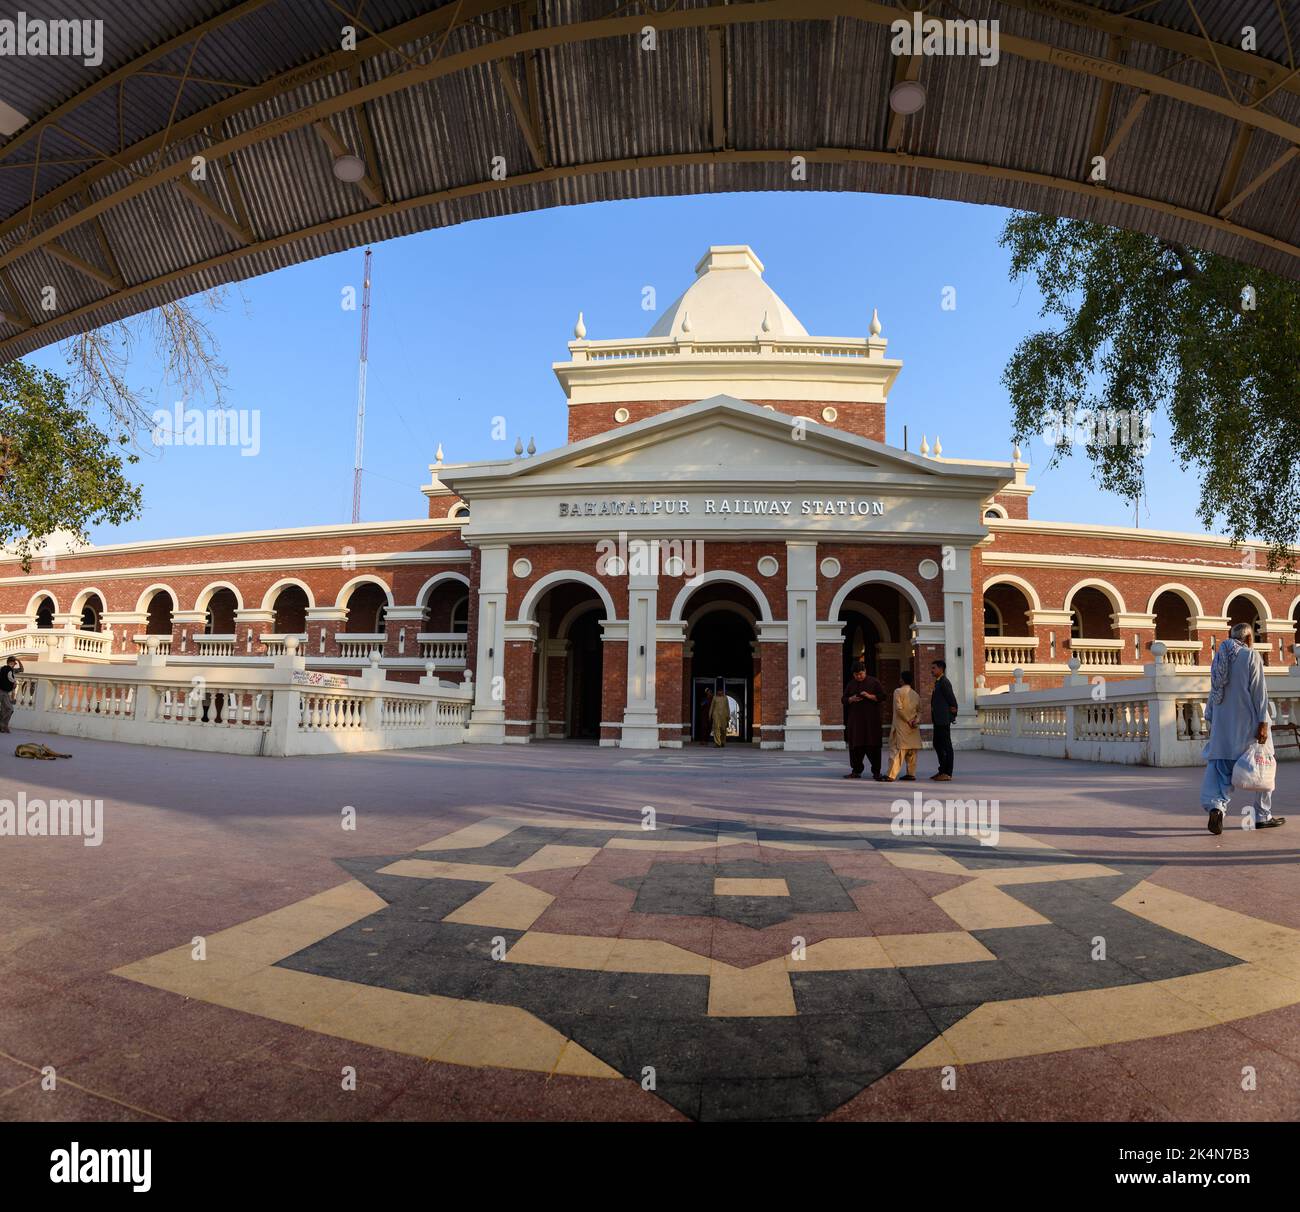 BAHAWALPUR, PAKISTÁN-24 DE FEBRERO de 2020; vista de la fachada de la estación de ferrocarril de Bahawalpur Foto de stock